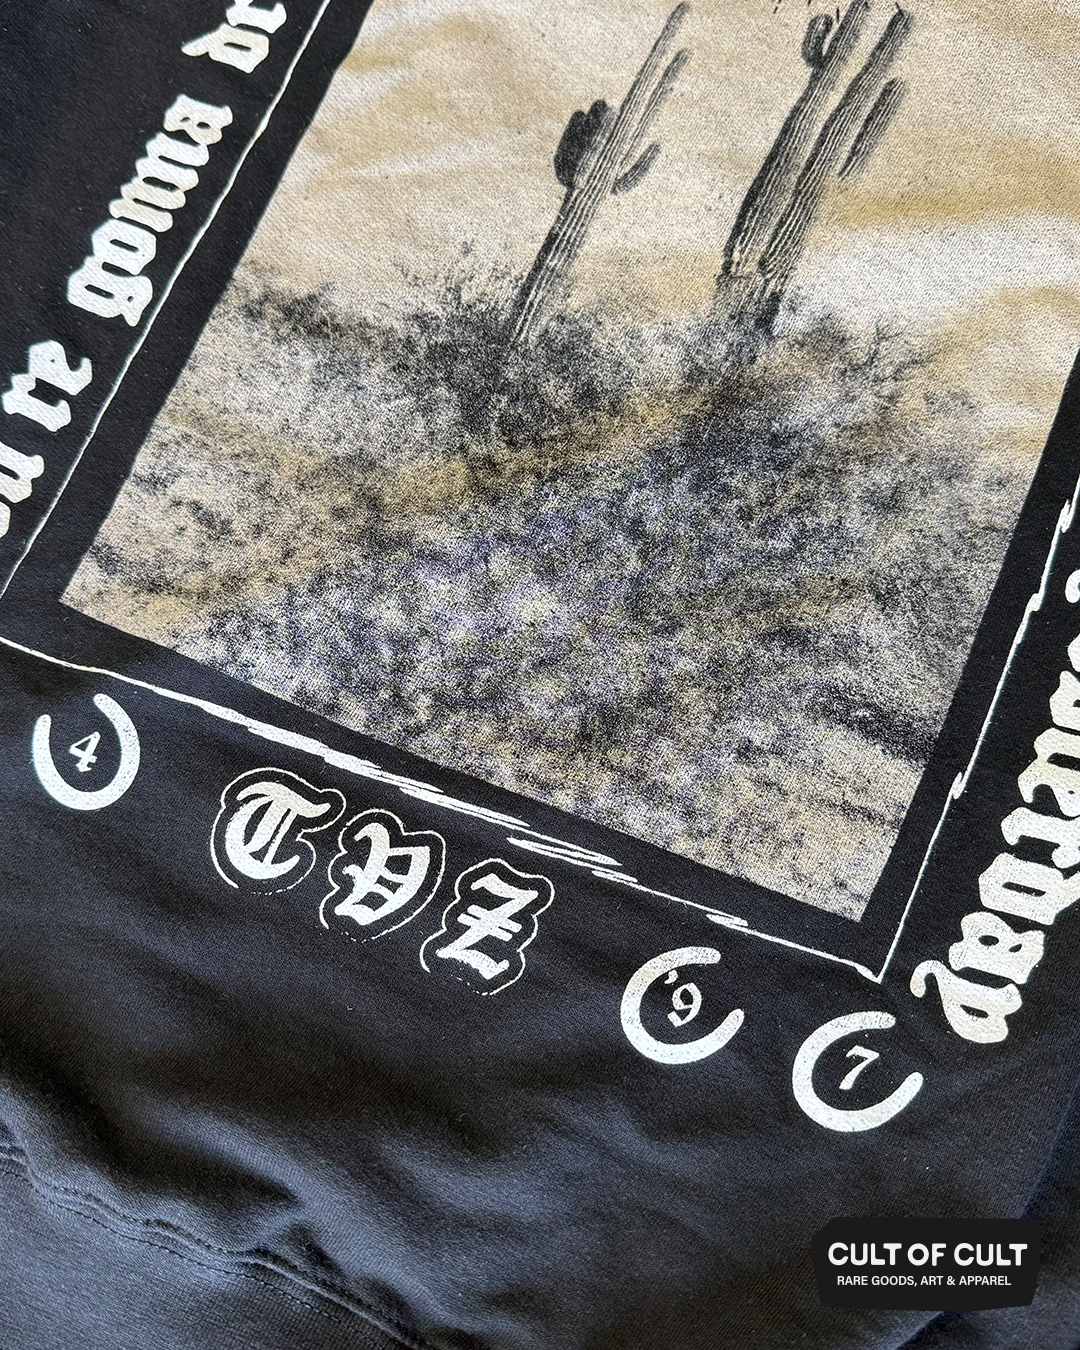 a close up view of the back of the Townes Van Zandt black crewneck sweatshirt